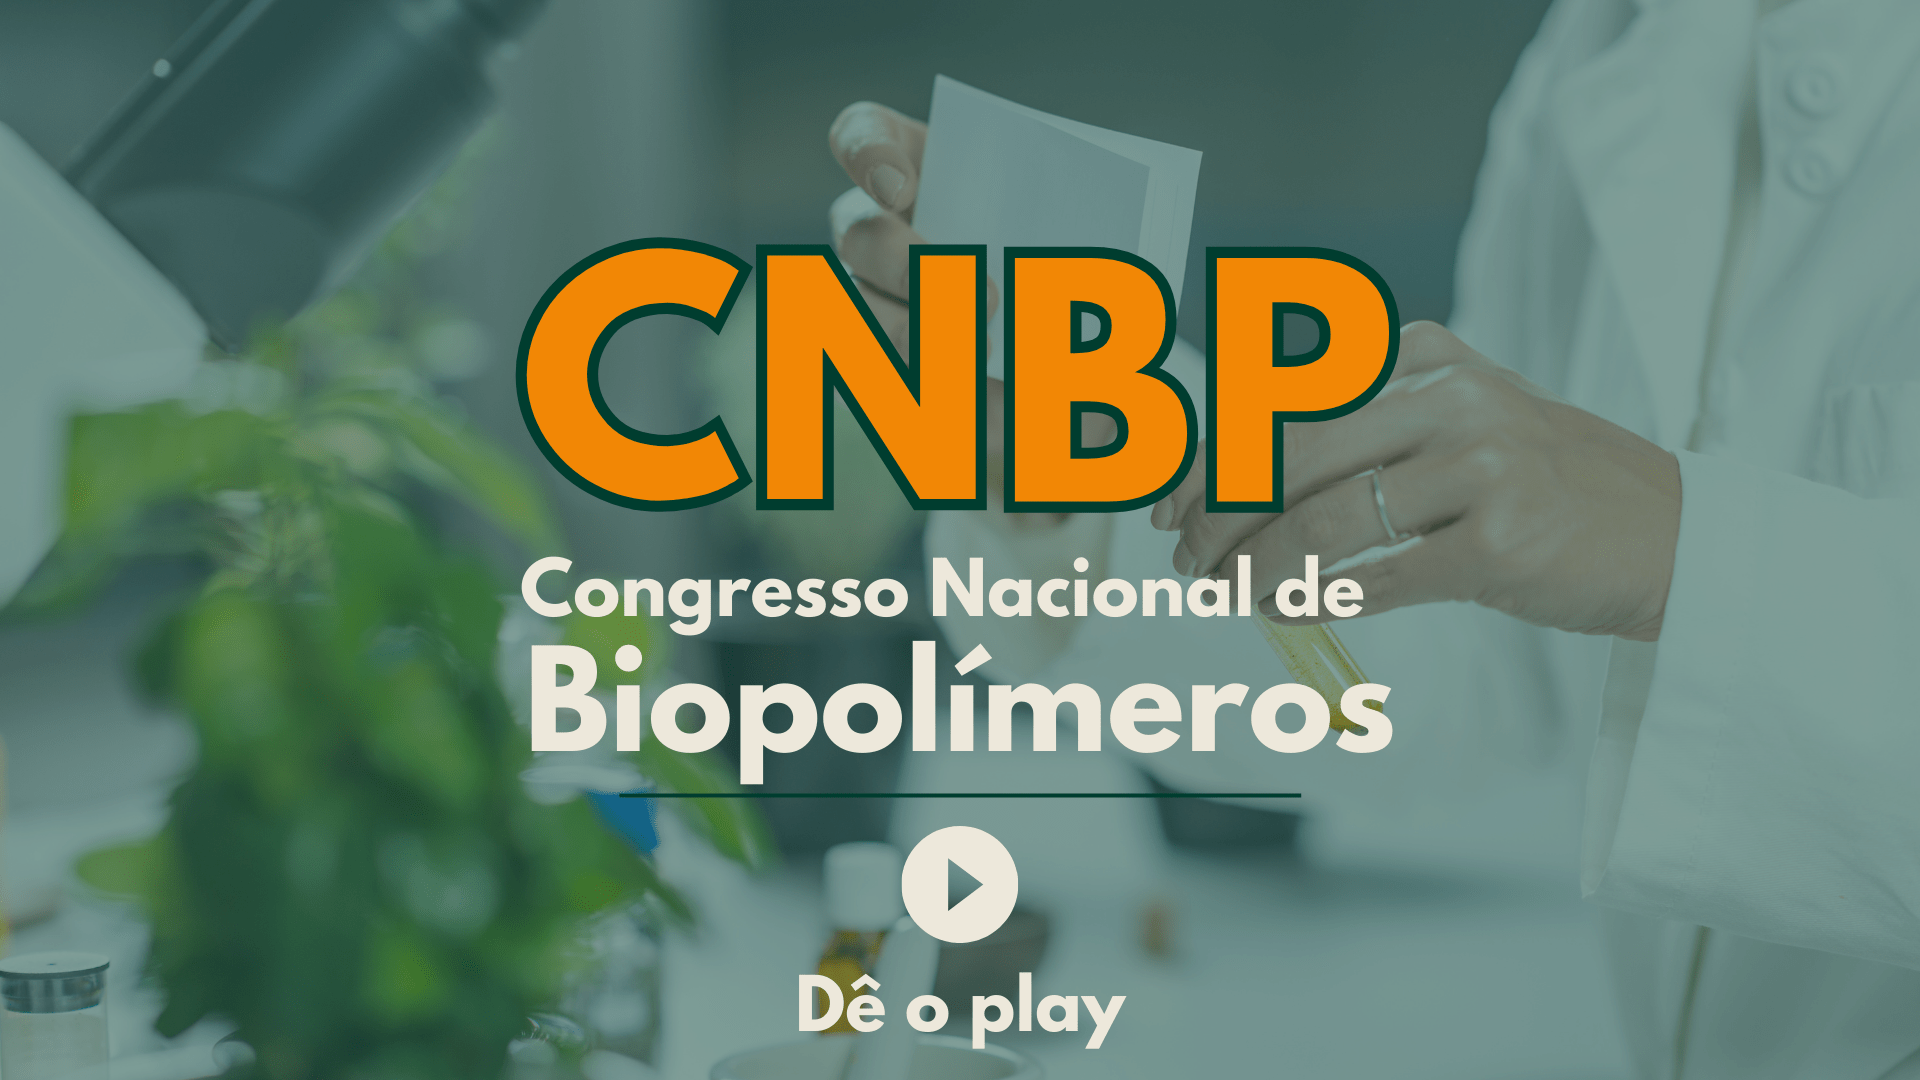 Inscrição Profissional – I Congresso Nacional de Biopolímeros